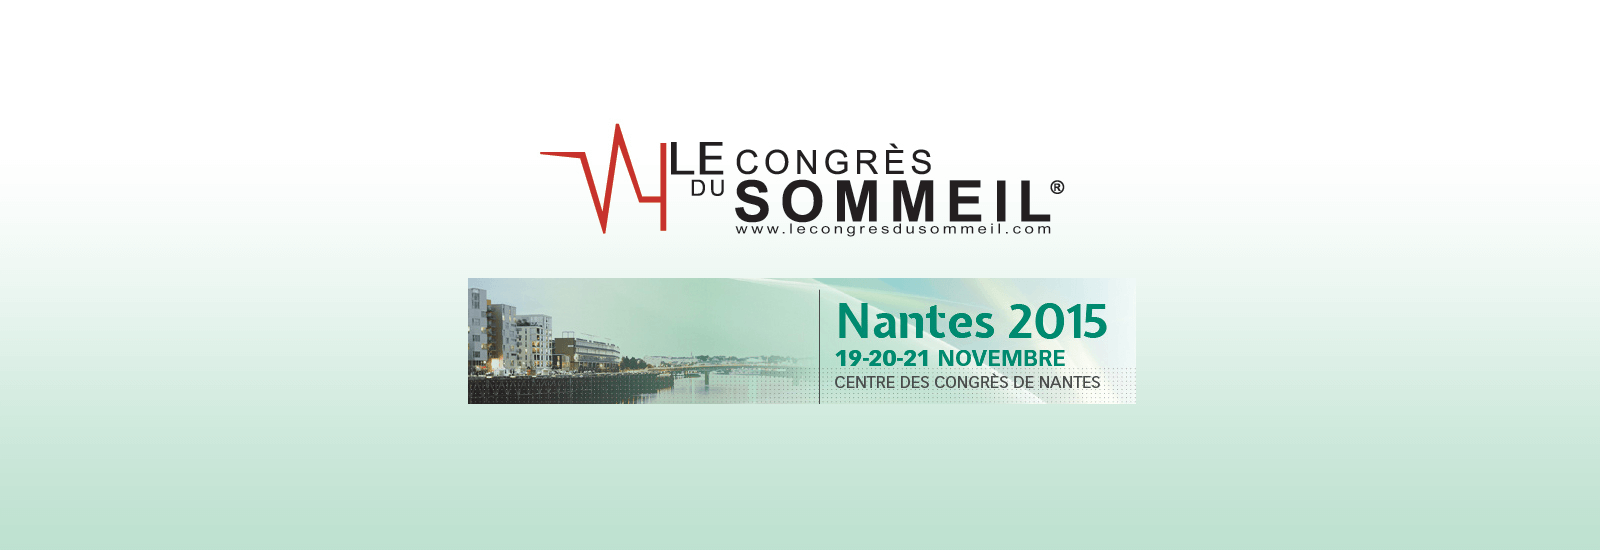 Congrès du sommeil Nantes 2015